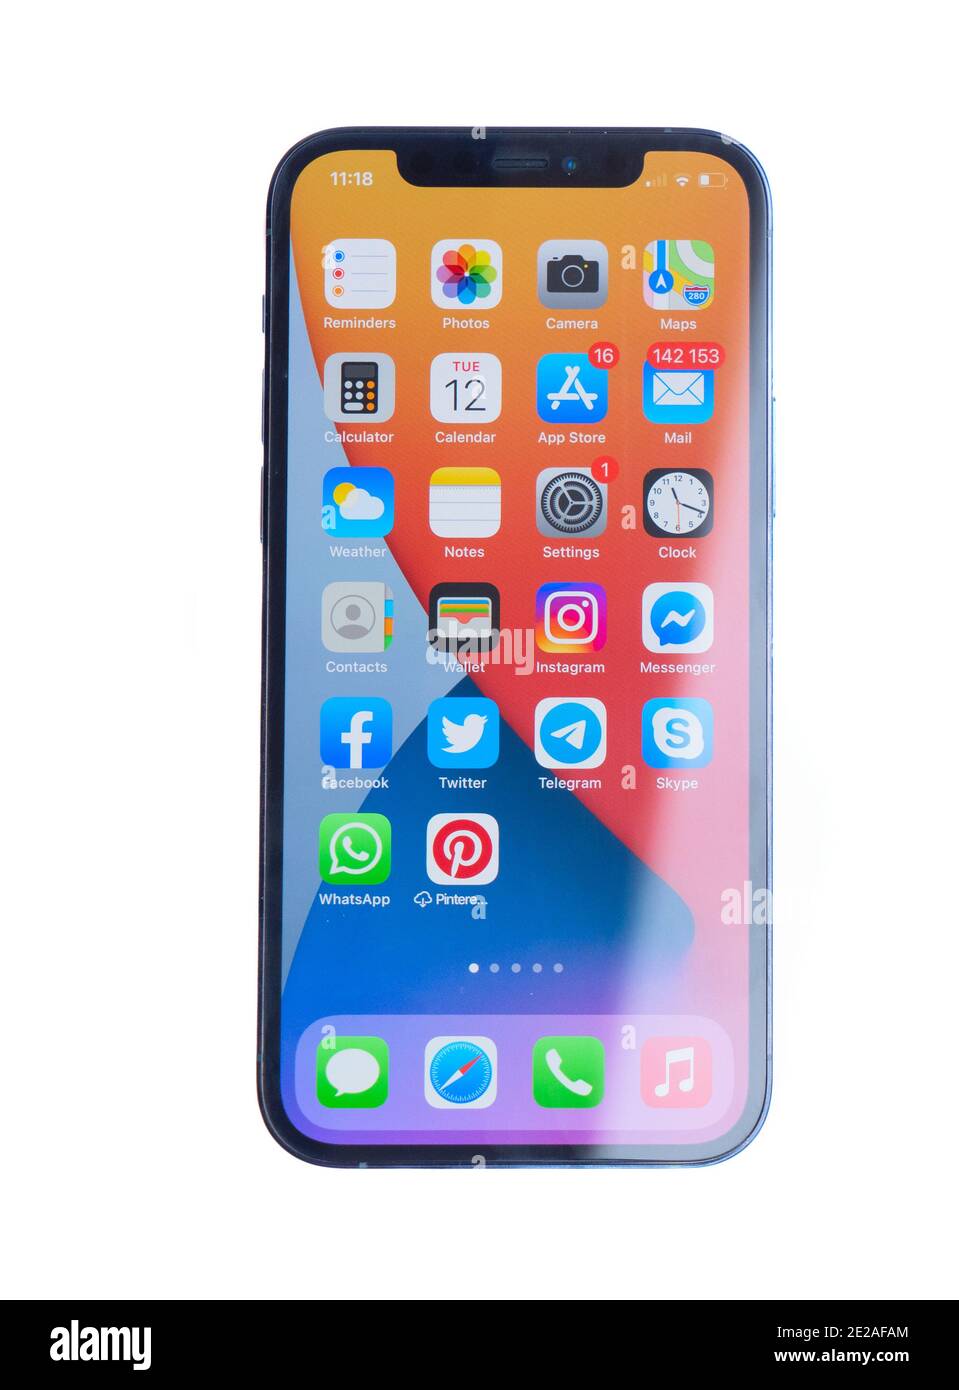 Iphone 12 pro: Chiếc điện thoại iPhone 12 Pro vẫn tiếp tục mang đến sự đẳng cấp và sang trọng cho người dùng. Với những tính năng đột phá và màn hình siêu nét, bạn chắc chắn sẽ không thể rời mắt khỏi sản phẩm này.